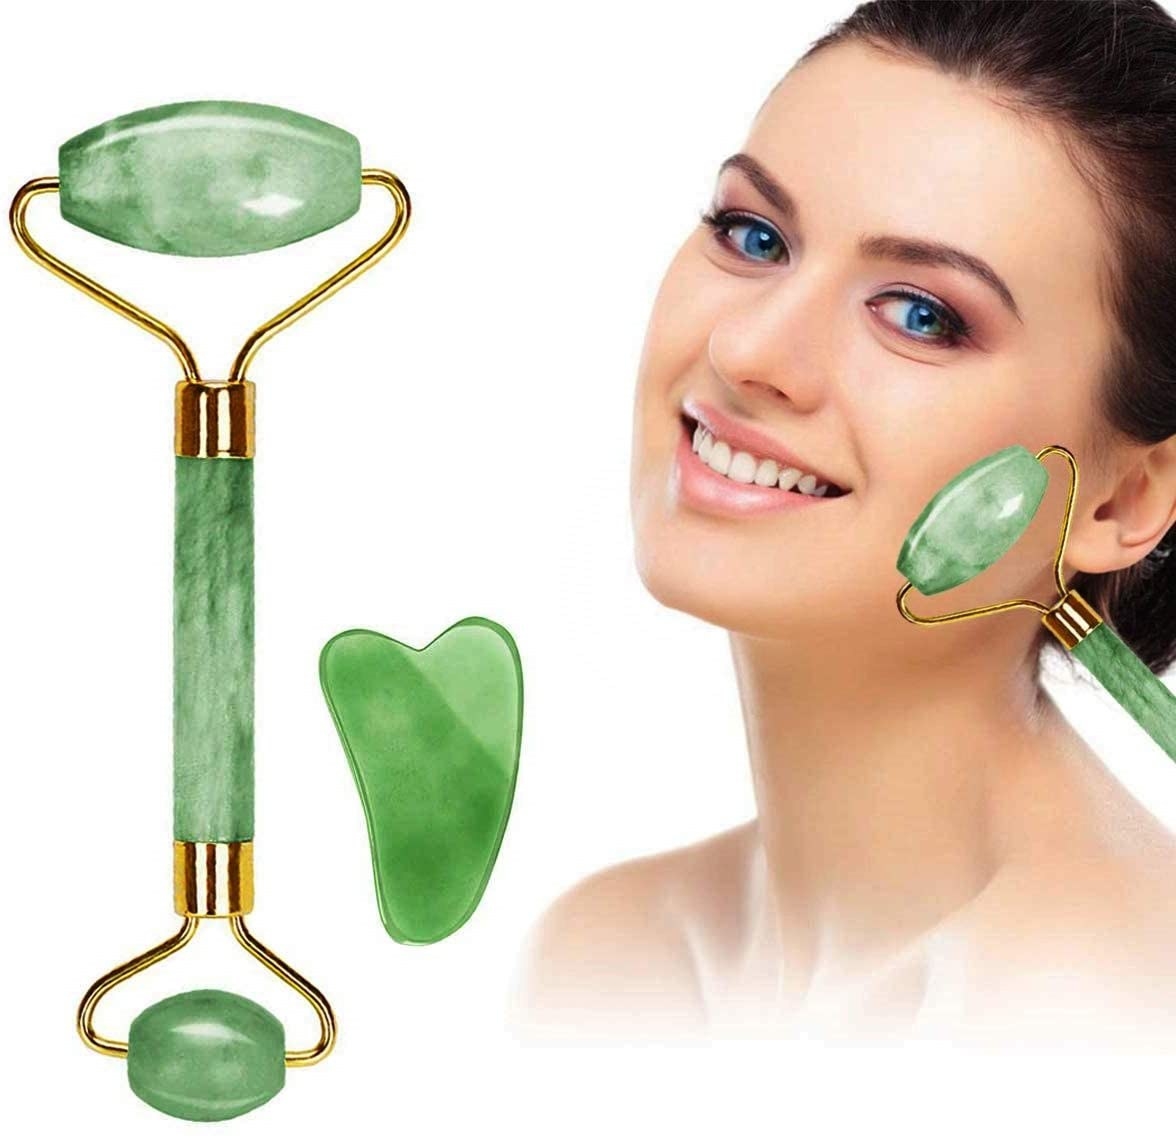 rodillo de jade para masaje en la cara